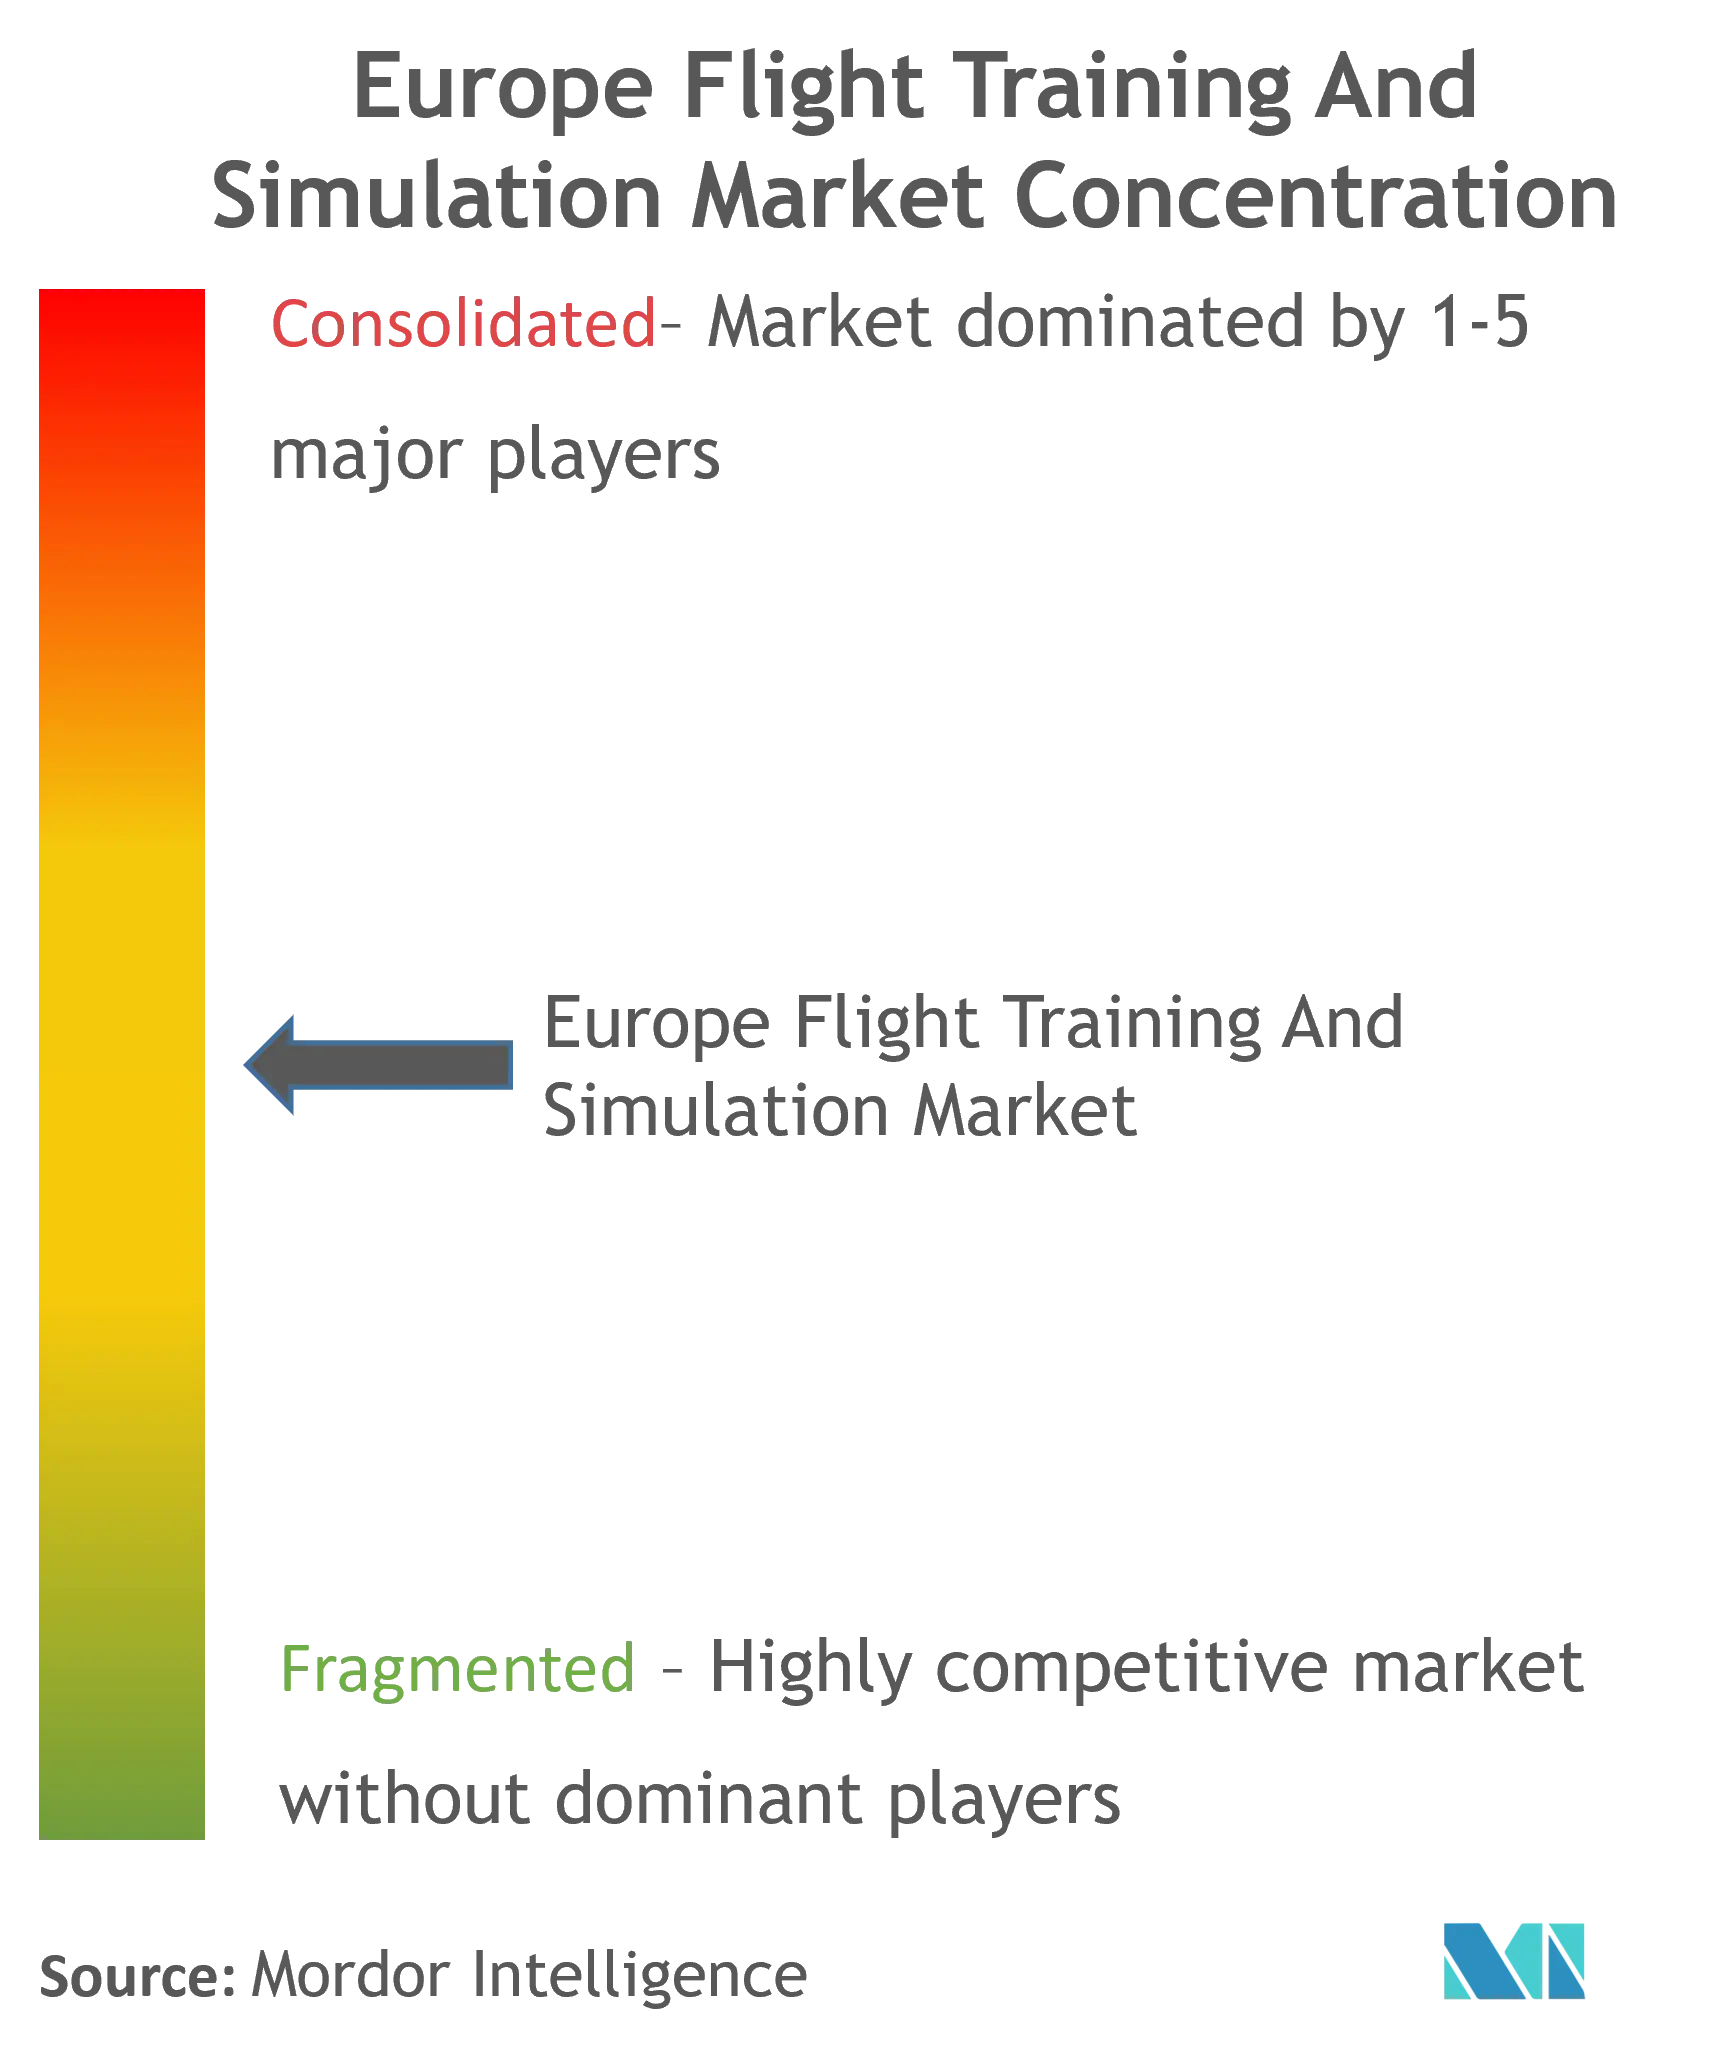 Entrenamiento y simulación de vuelo en EuropaConcentración del Mercado